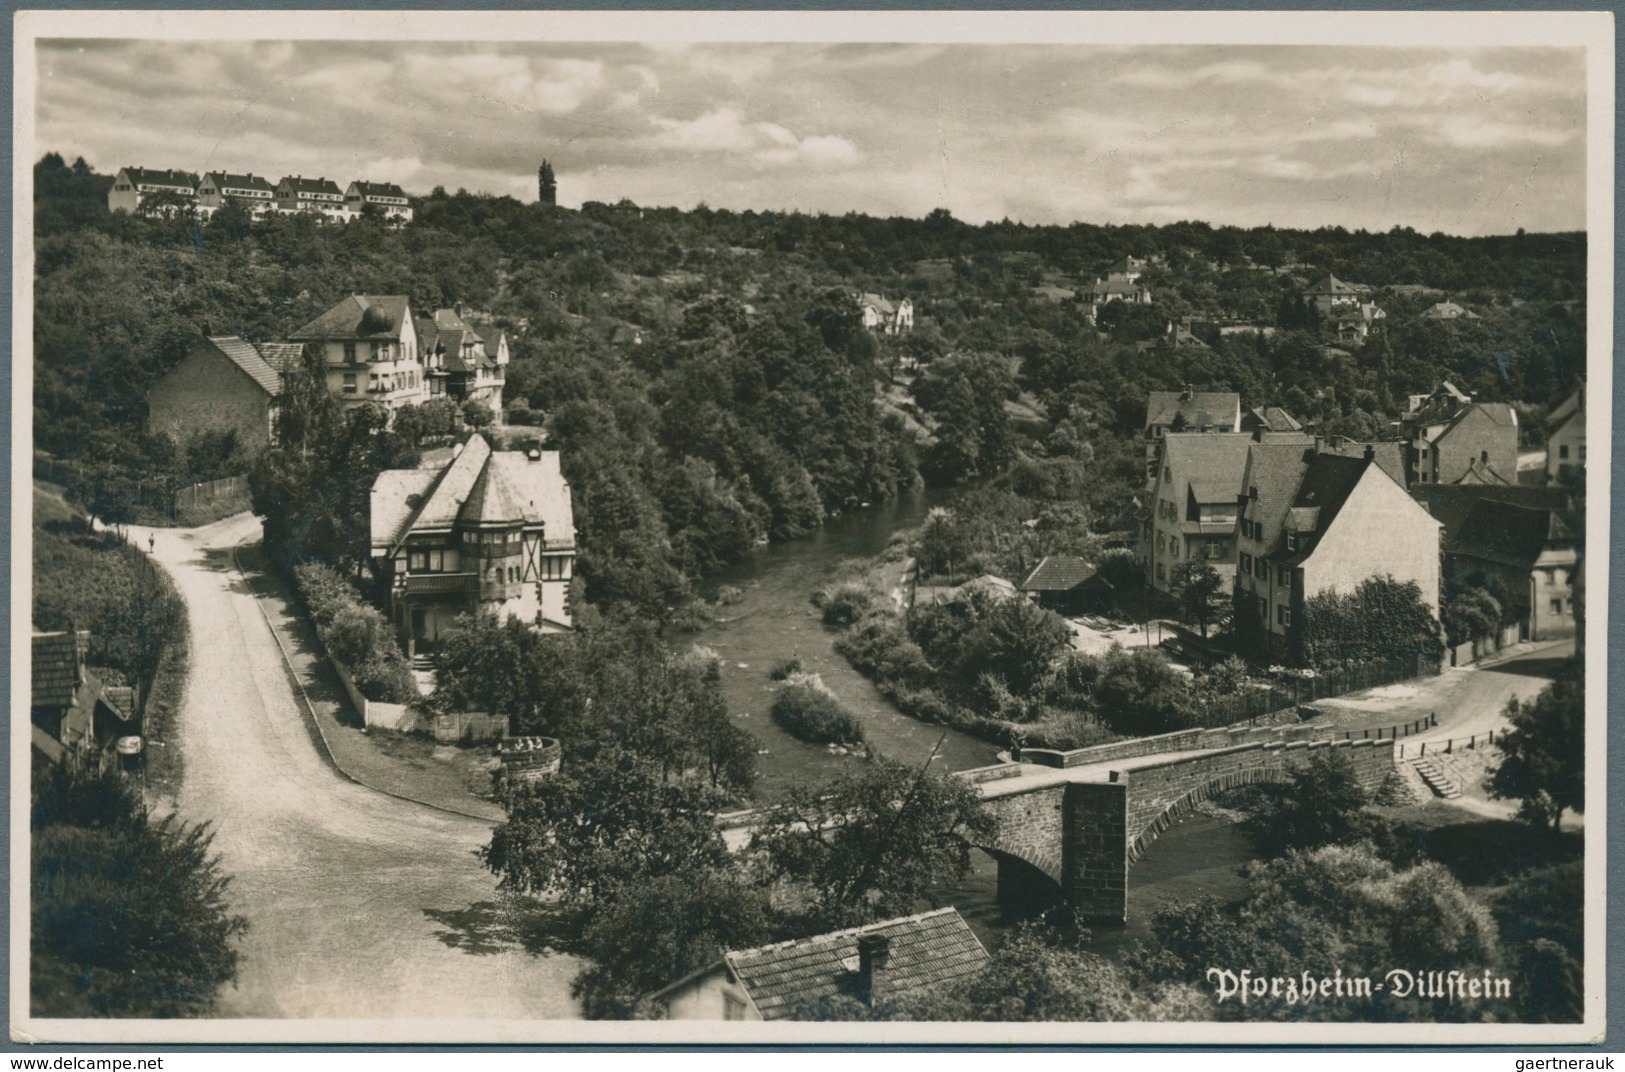 Ansichtskarten: Baden-Württemberg: NÖRDLICHER SCHWARZWALD (alte PLZ 753 - 7546), Karton mit gut 950